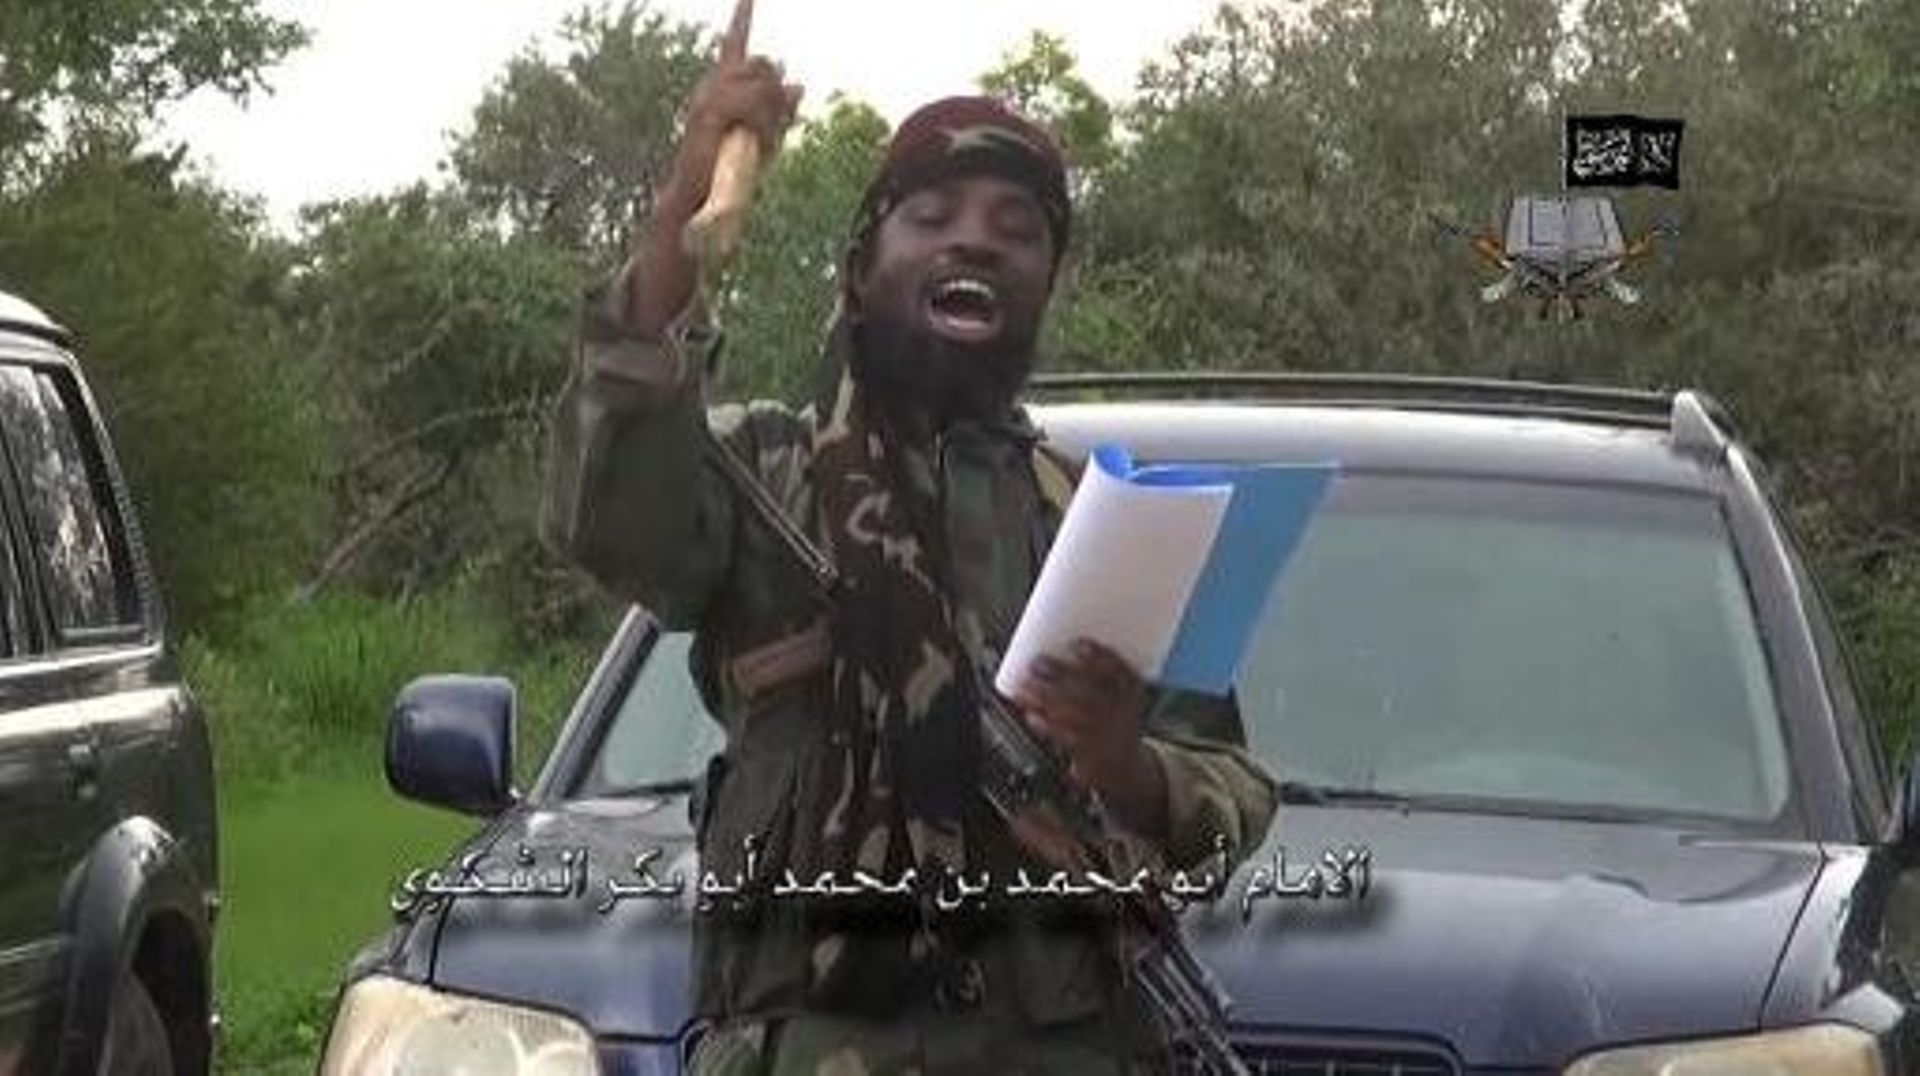 Capture d'écran réalisée le 24 août 2014 d'une vidéo diffusée par le groupe ismaliste nigérian Boko Haram montrant son leader Abubakar Shekau